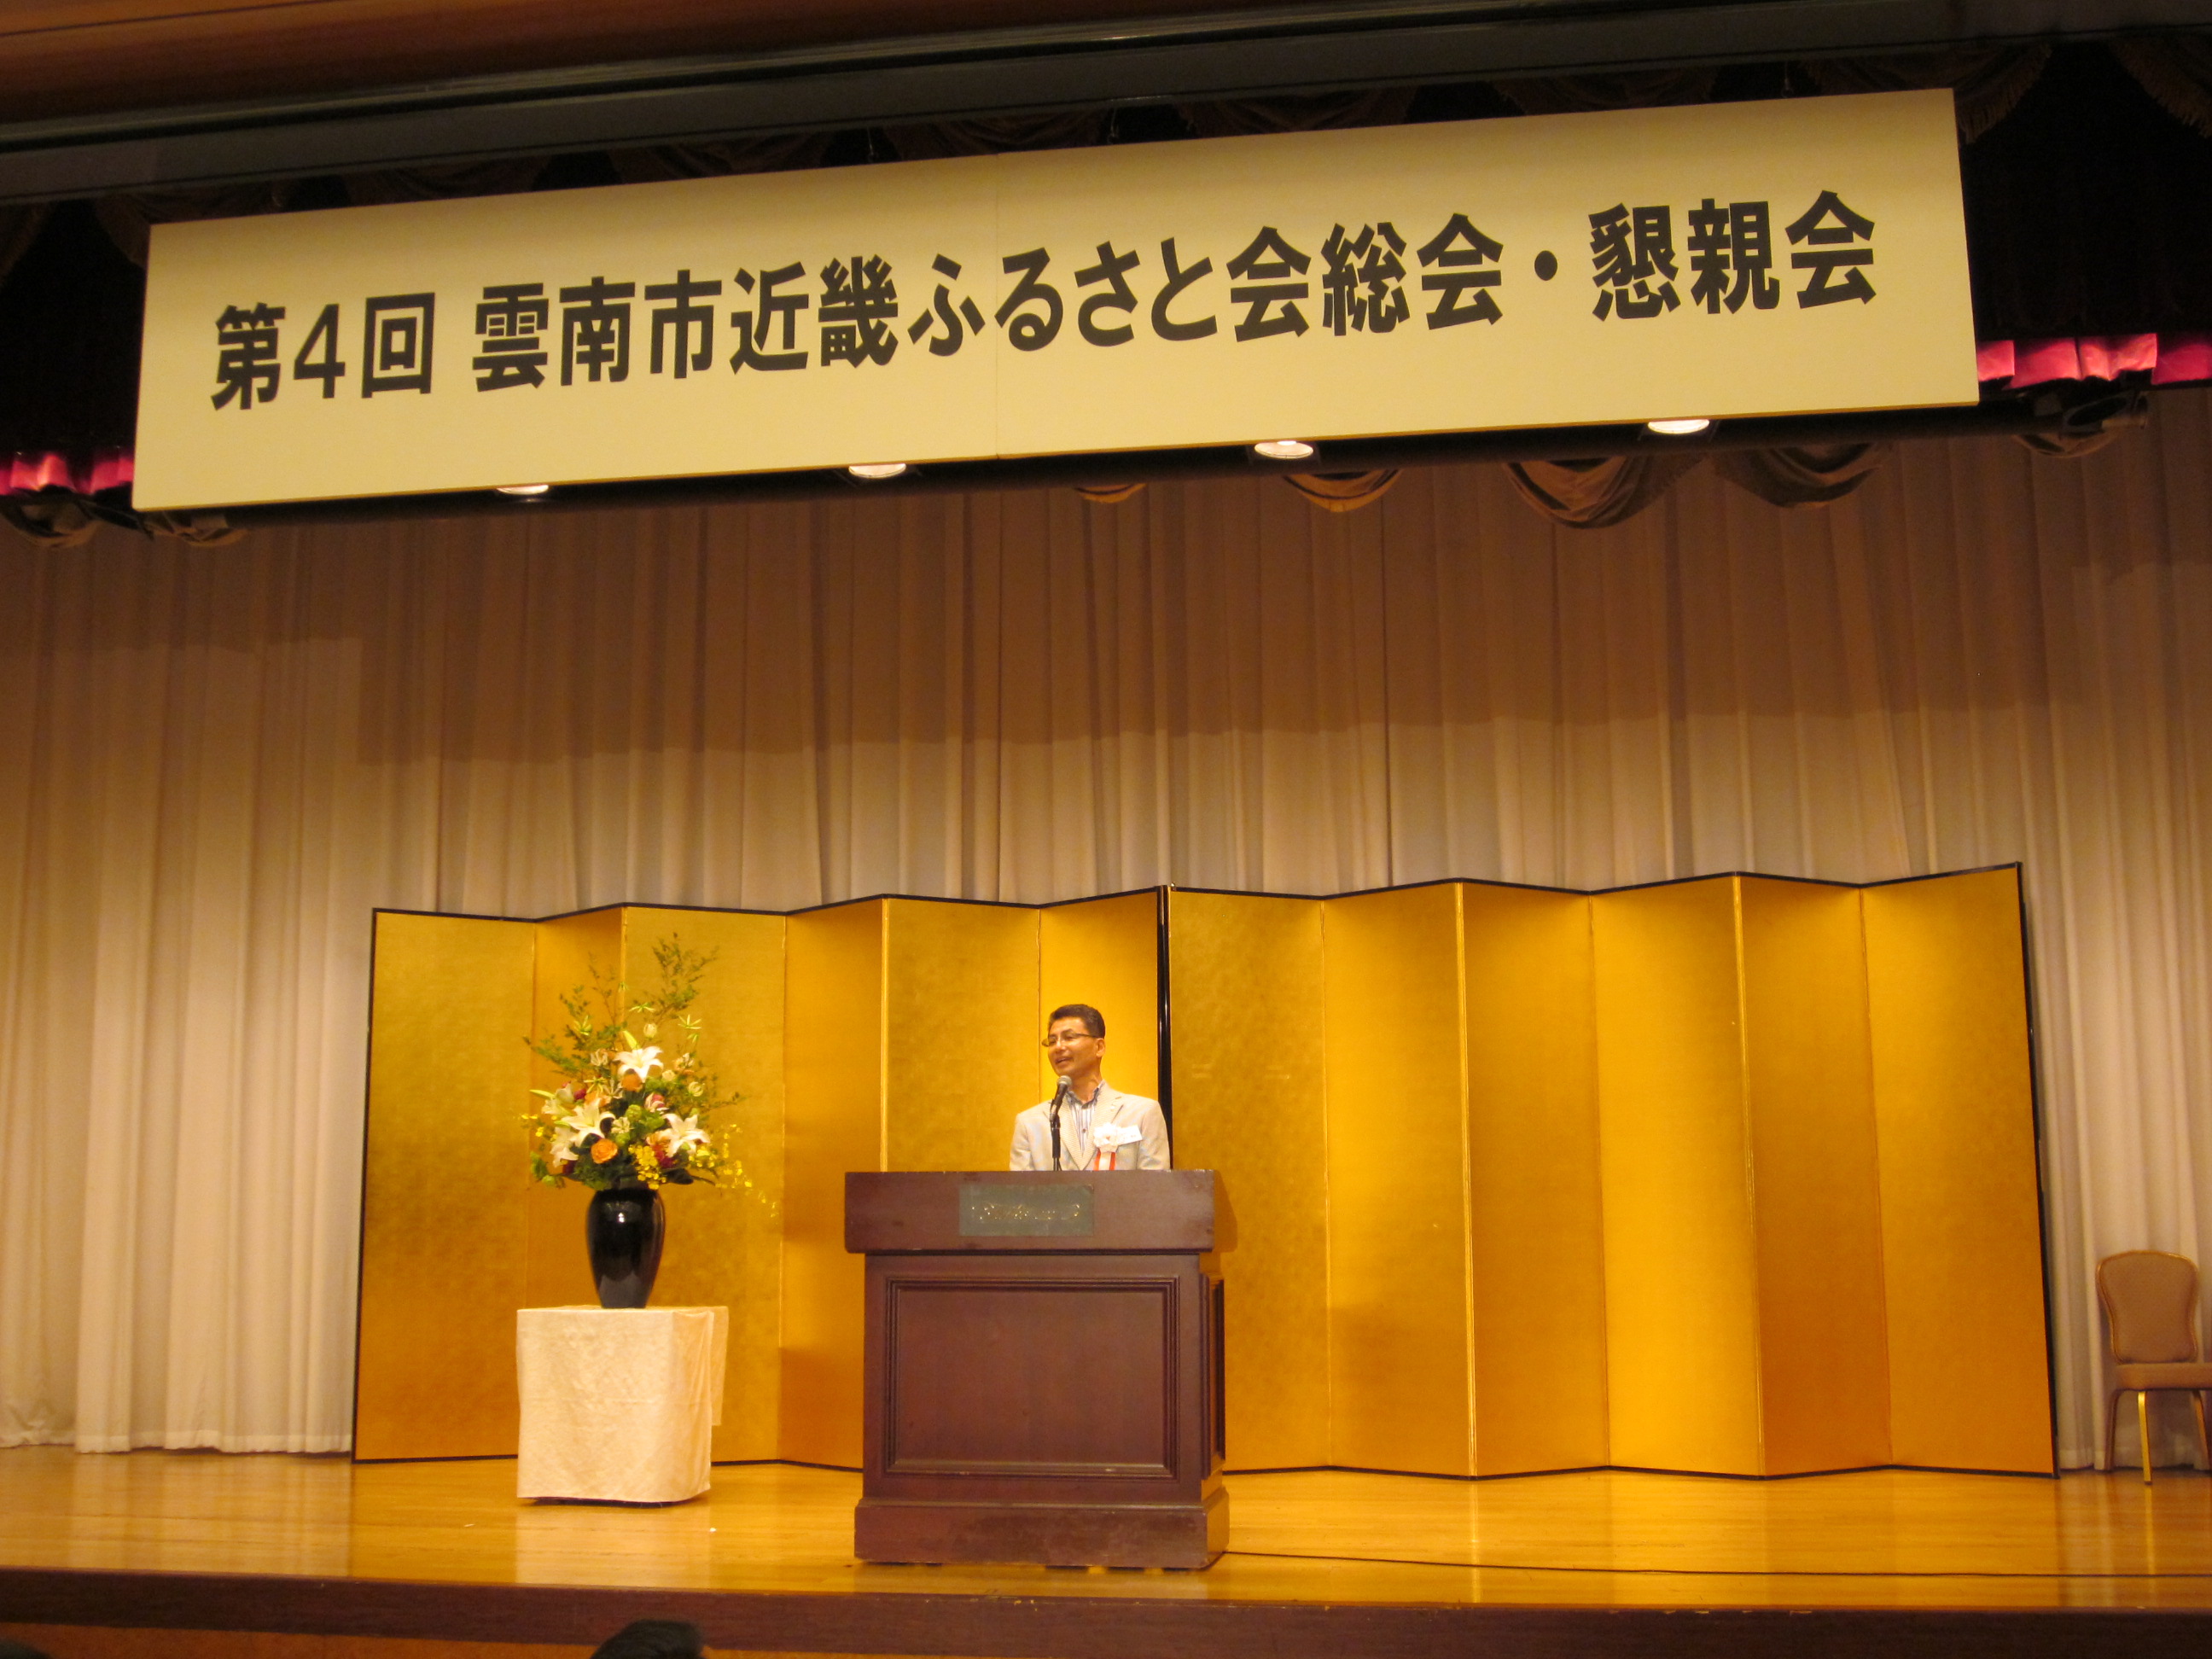 近畿ふるさと会総会であいさつされる須山会長の写真